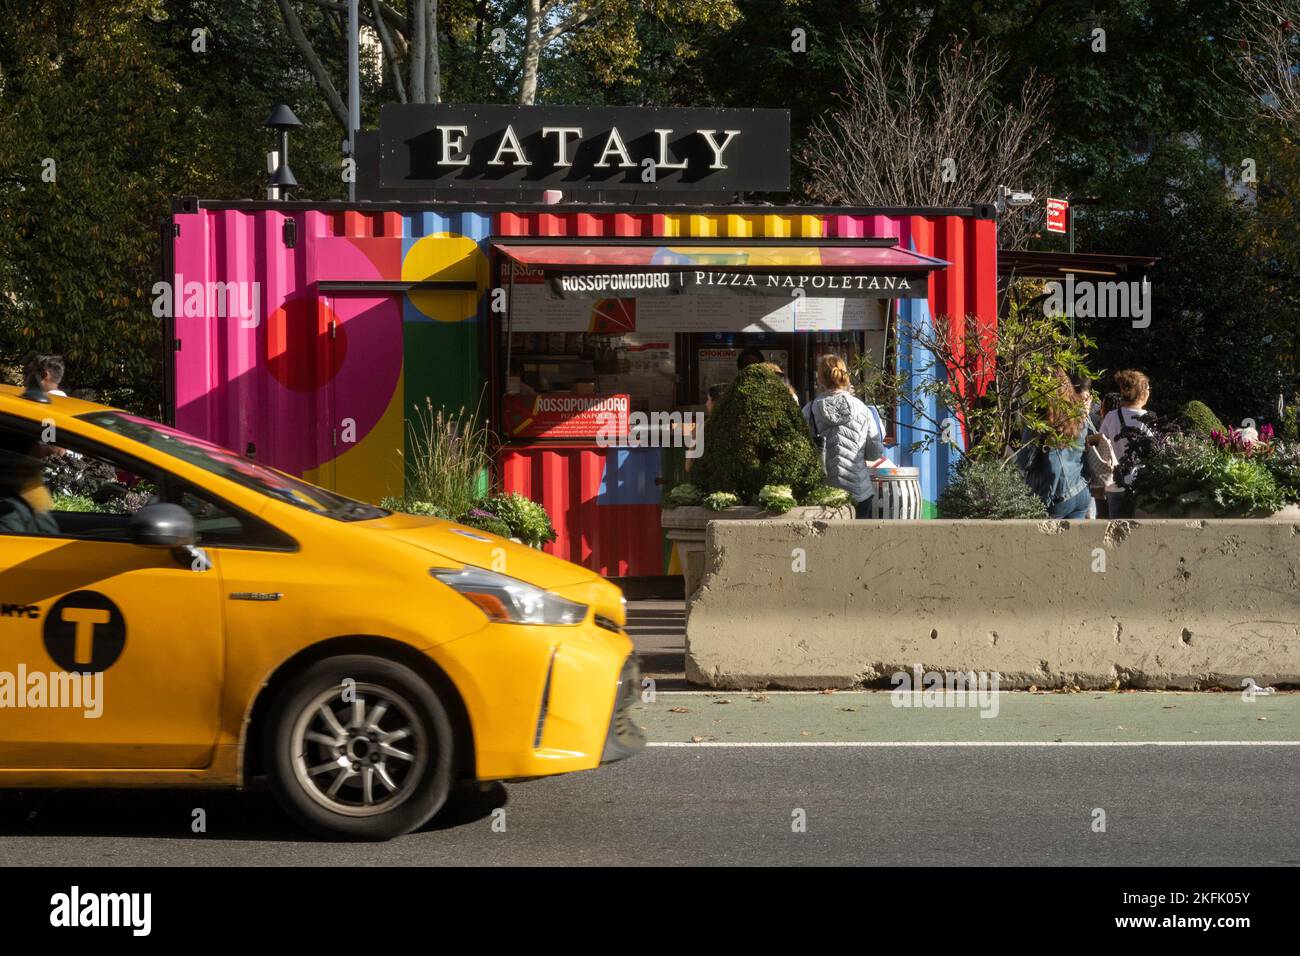 Il mercato alimentare italiano Eataly gestisce uno stand di concessione nella piazza di fronte a Madison Square, Park at Fifth Avenue e 23rd St., 2022, NYC, USA Foto Stock